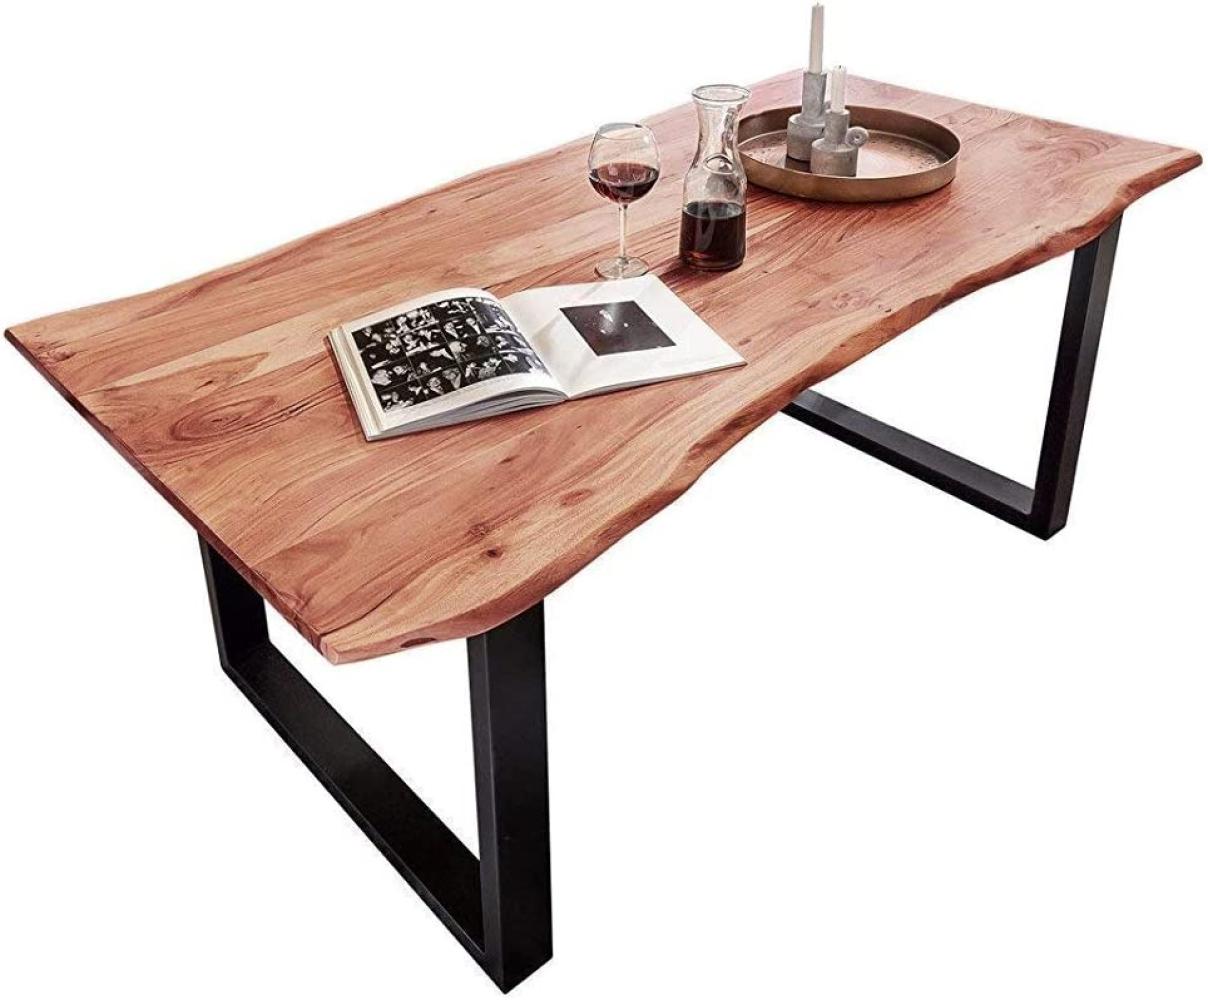 Junado Baumkantentisch 120x80 cm Quarto, Esszimmertisch aus Akazie, naturfarben, Holz-Tisch mit schwarz lackierten Beinen Bild 1